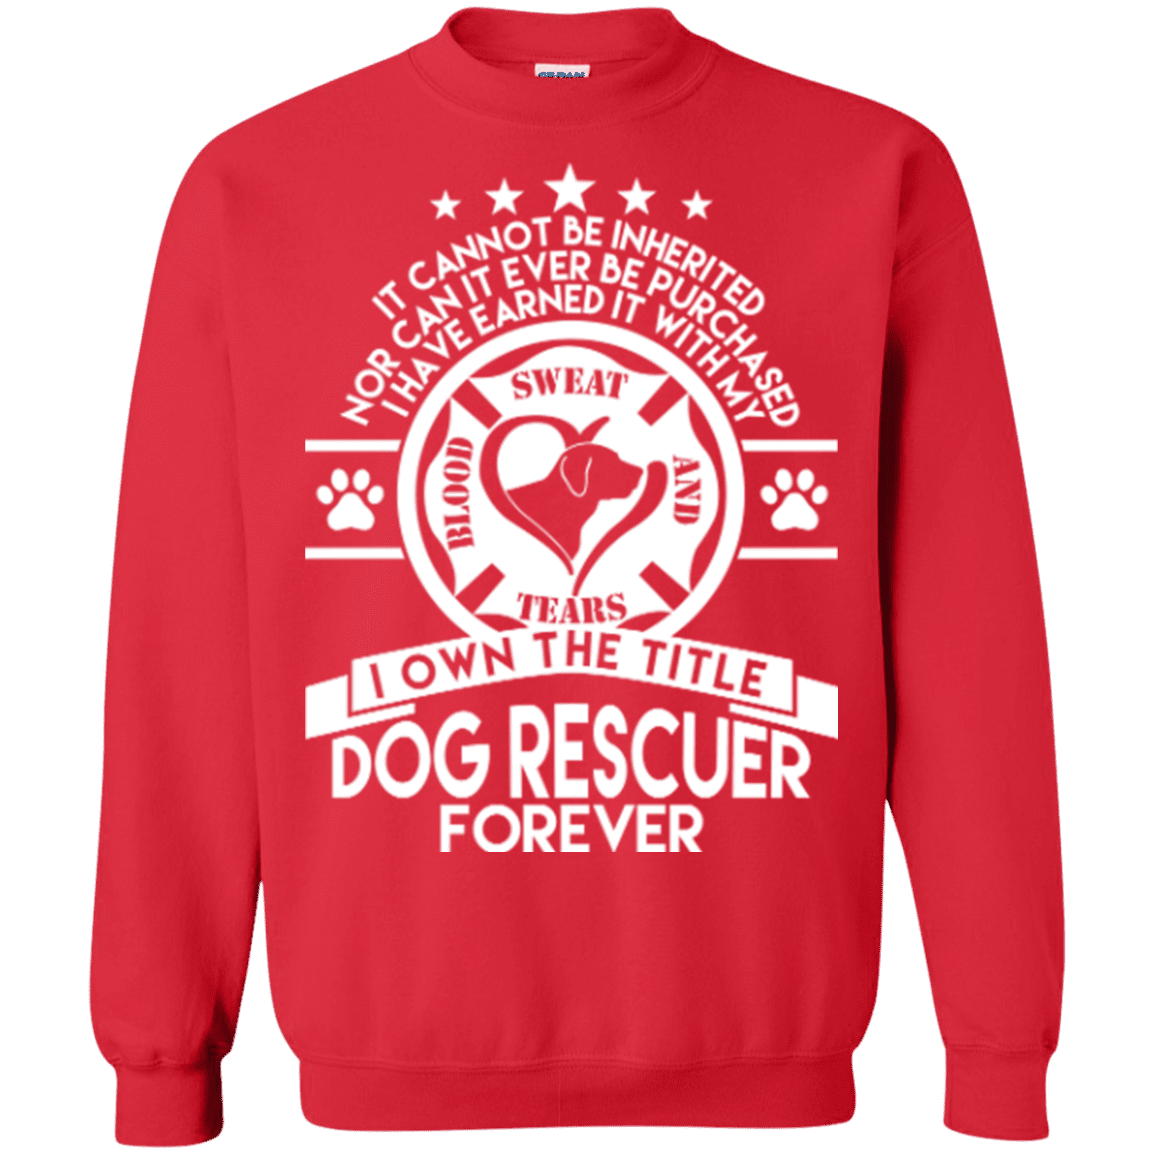 Dog Rescuer Forever - Sweatshirt.